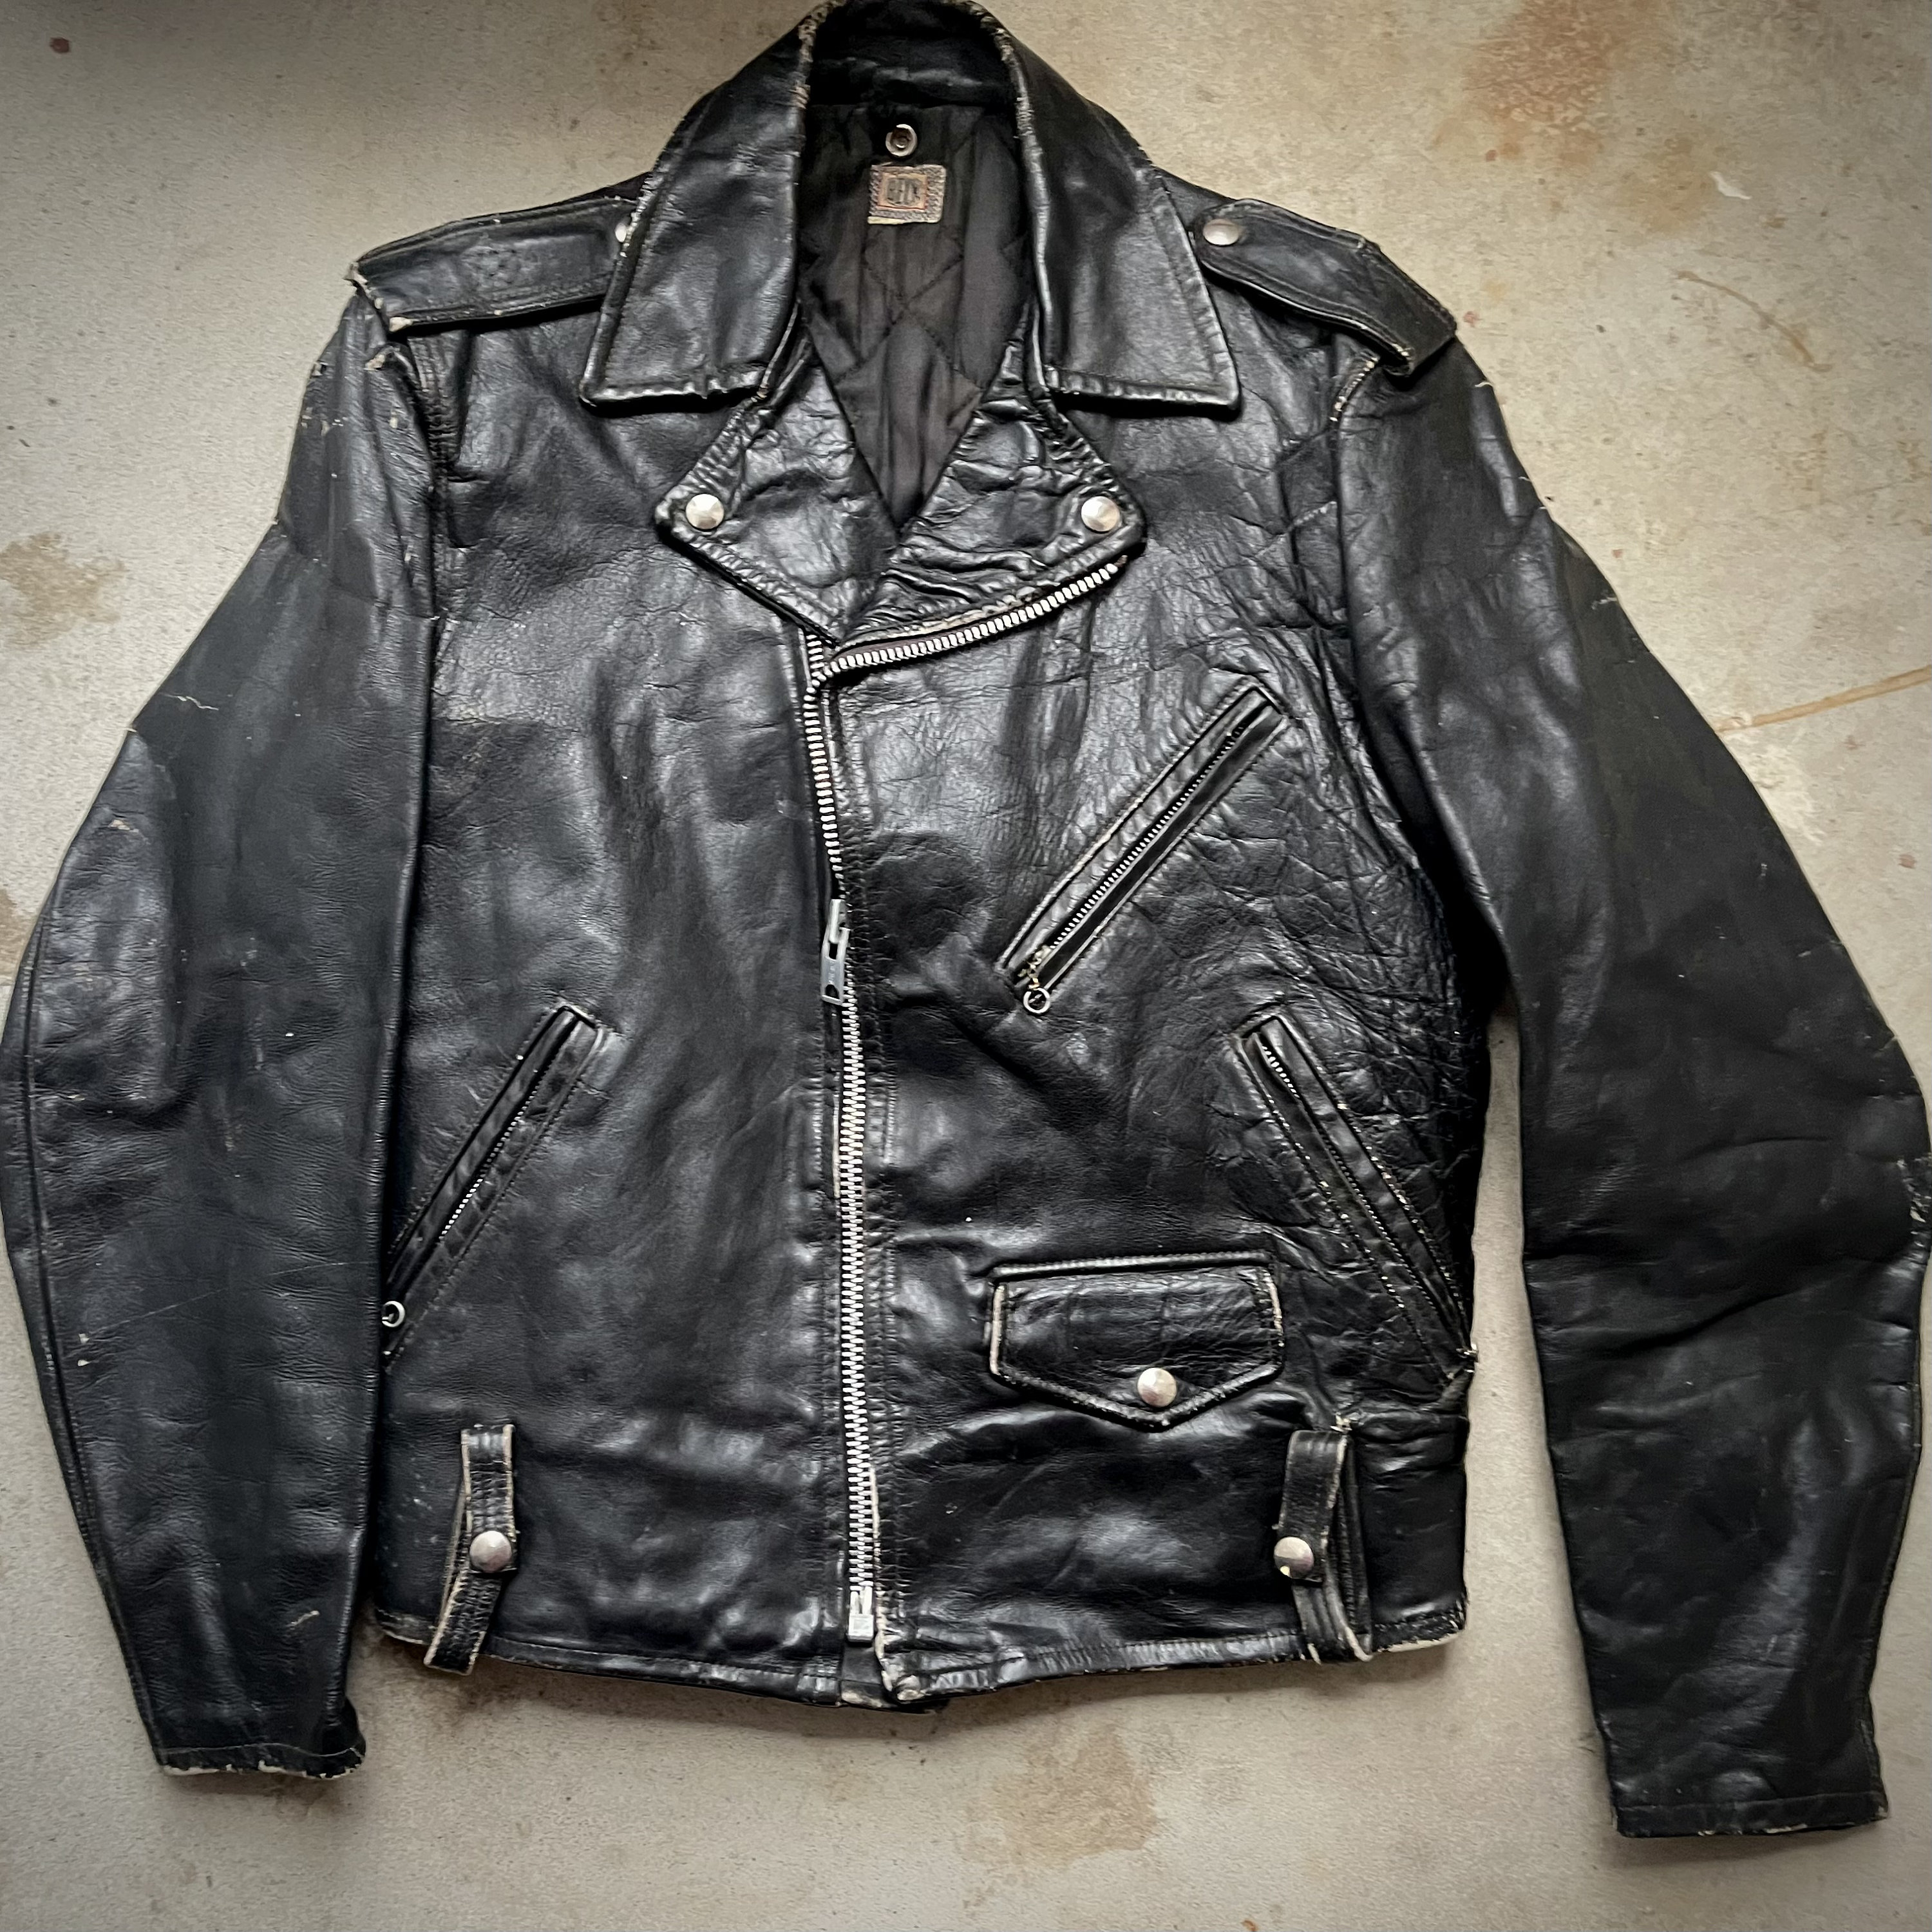 Lewis Leather Jacket - Etsy